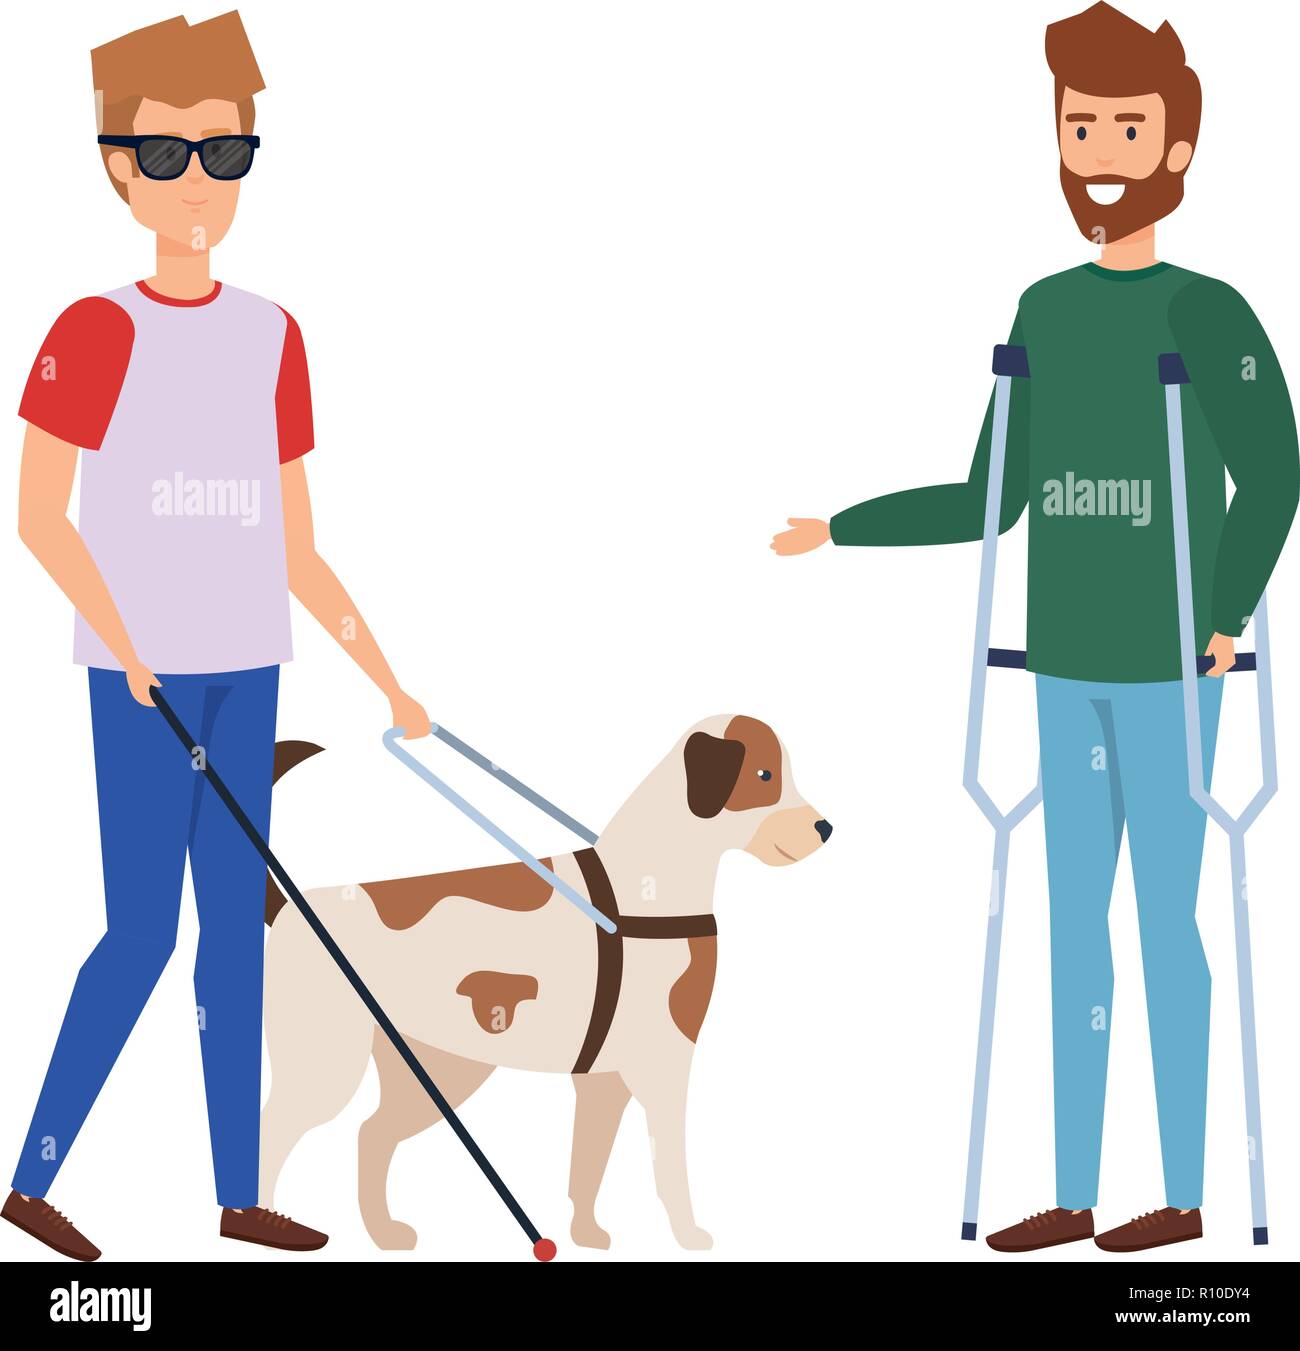 Blinden Mann mit Hund und Mann mit Prothese Stock-Vektorgrafik - Alamy